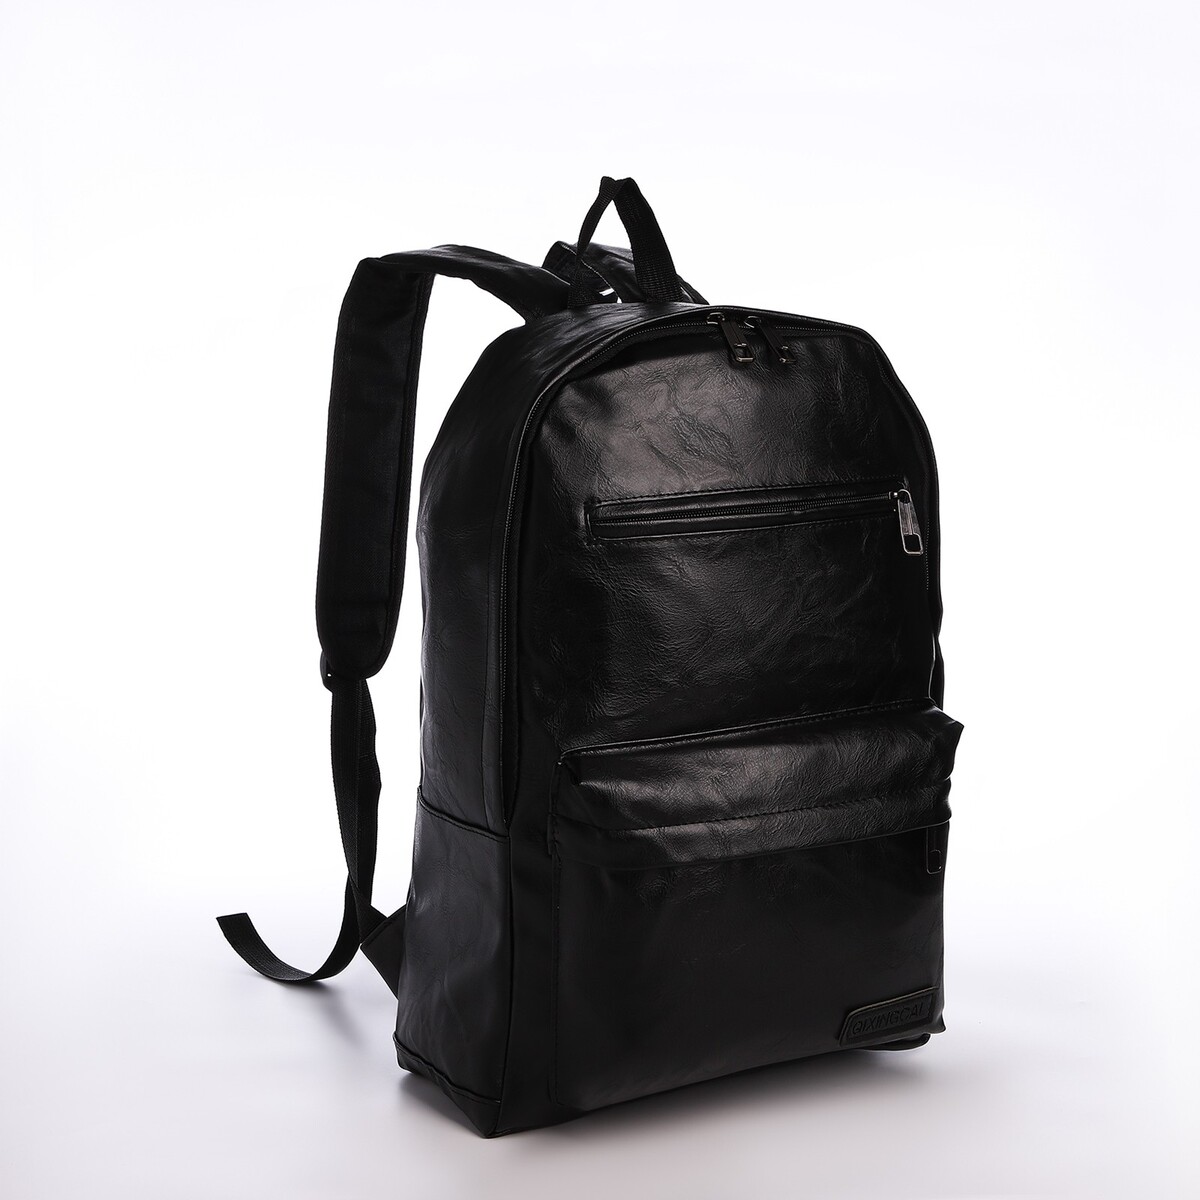 Рюкзак городской из искусственной кожи на молнии, 4 кармана, цвет черный рюкзак городской из текстиля на молнии 4 кармана